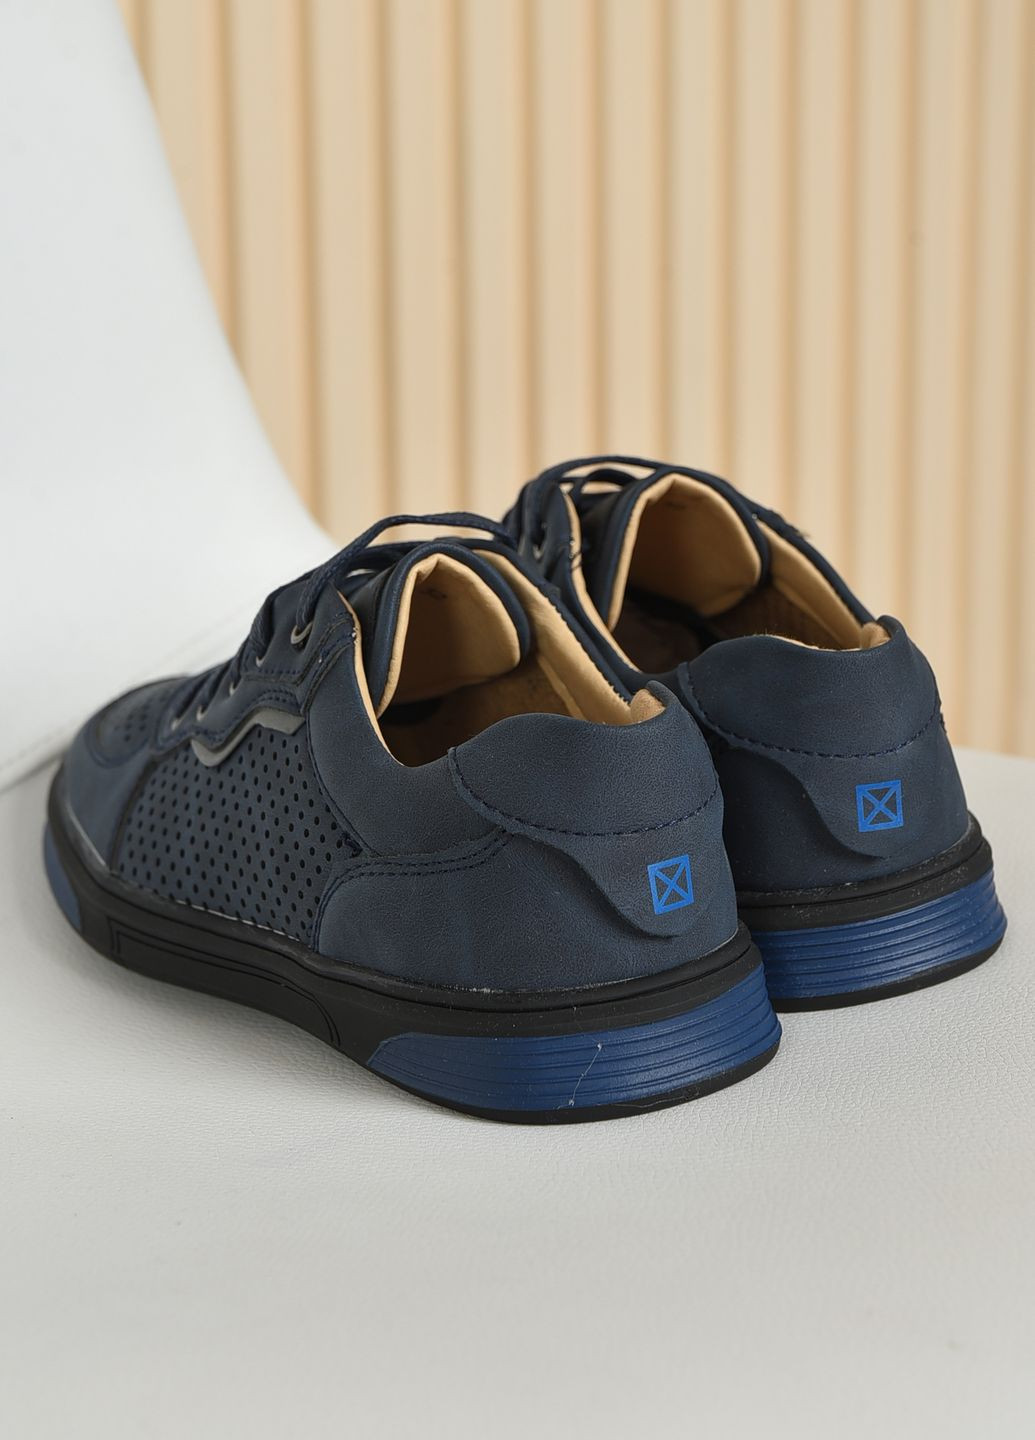 Темно-синие туфли детские мальчик темно-синего цвета со шнурками Let's Shop